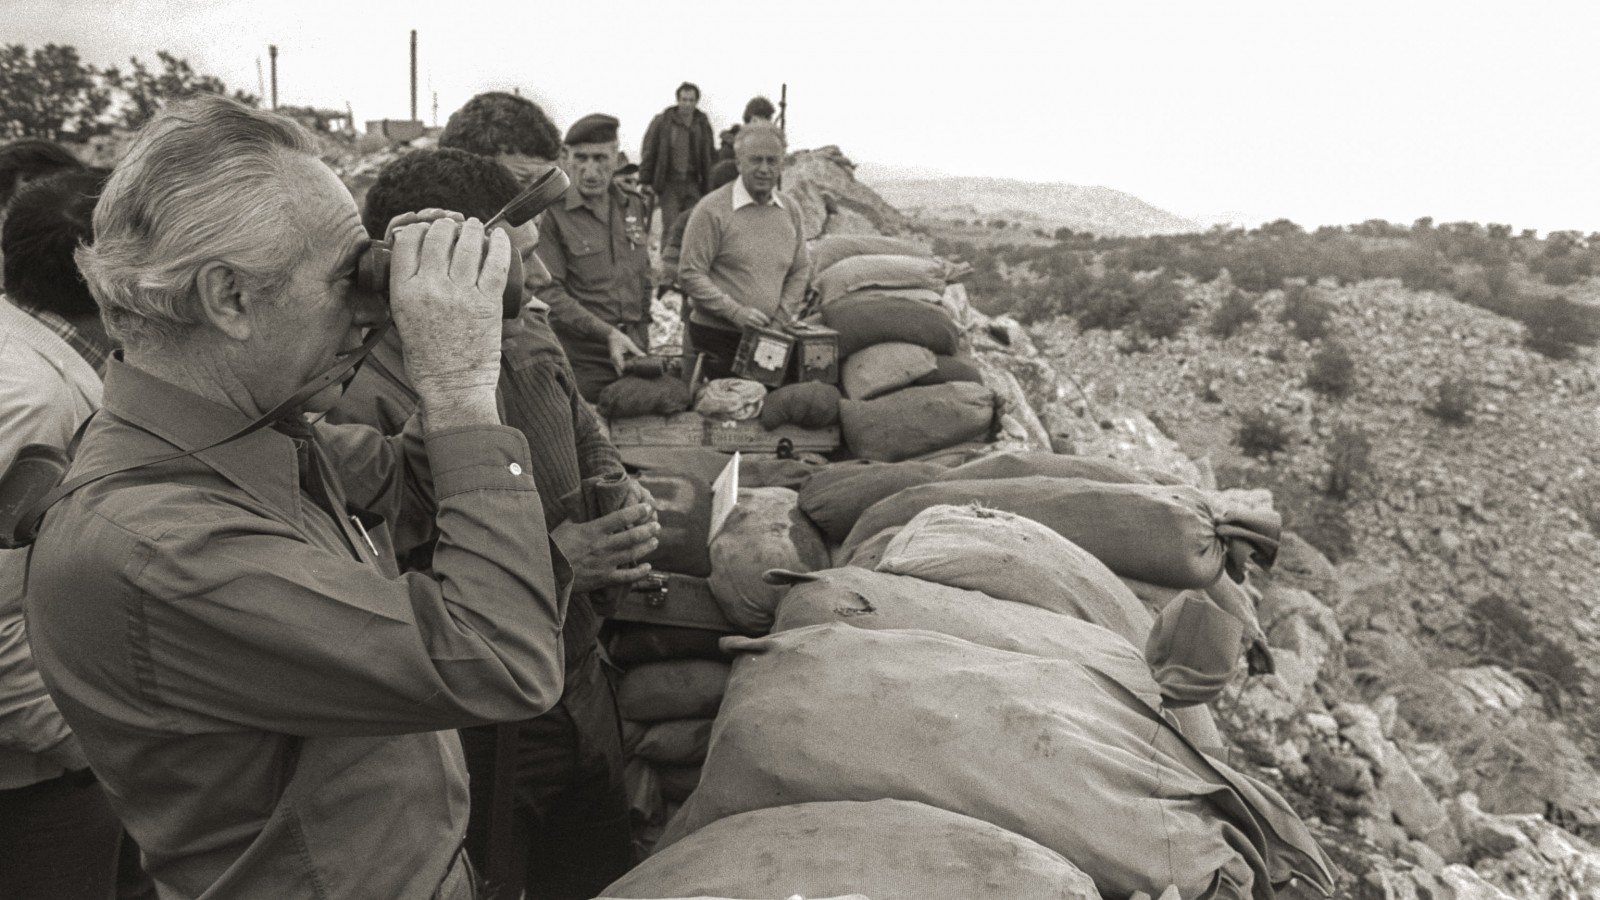 ראש הממשלה, שמעון פרס, ושר הבטחון, יצחק רבין, בעמדת תצפית במזרח רצועת הבטחון, דרום לבנון. 1984 (צילום: נתי הרניק / לע״מ).